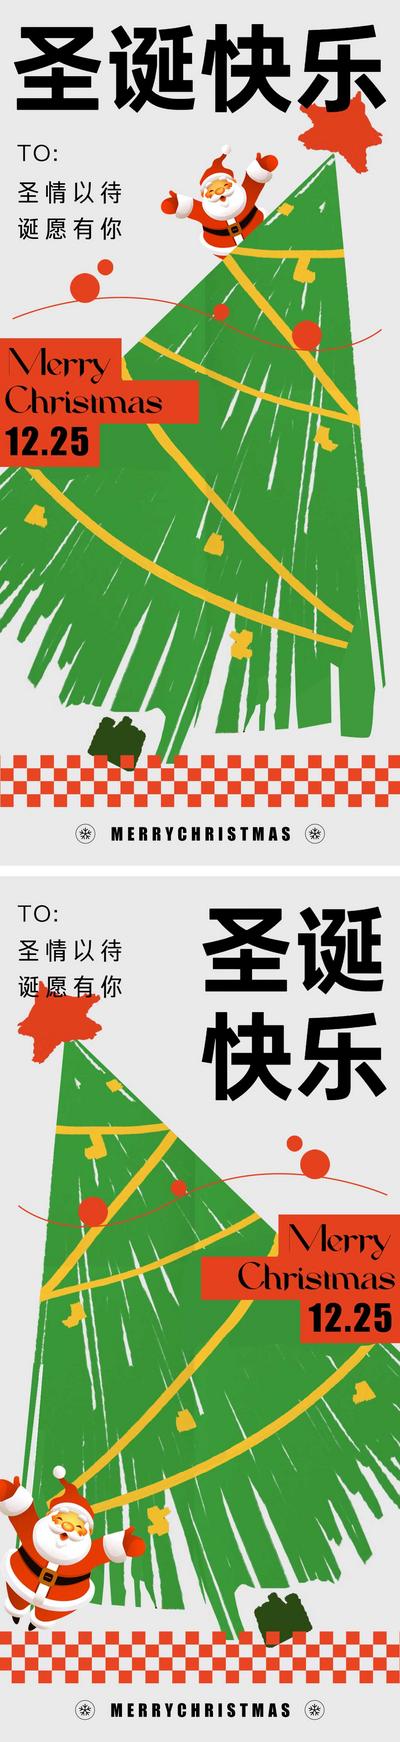 南门网 海报 房地产 公历节日 圣诞节 平安夜 圣诞树 圣诞老人 插画